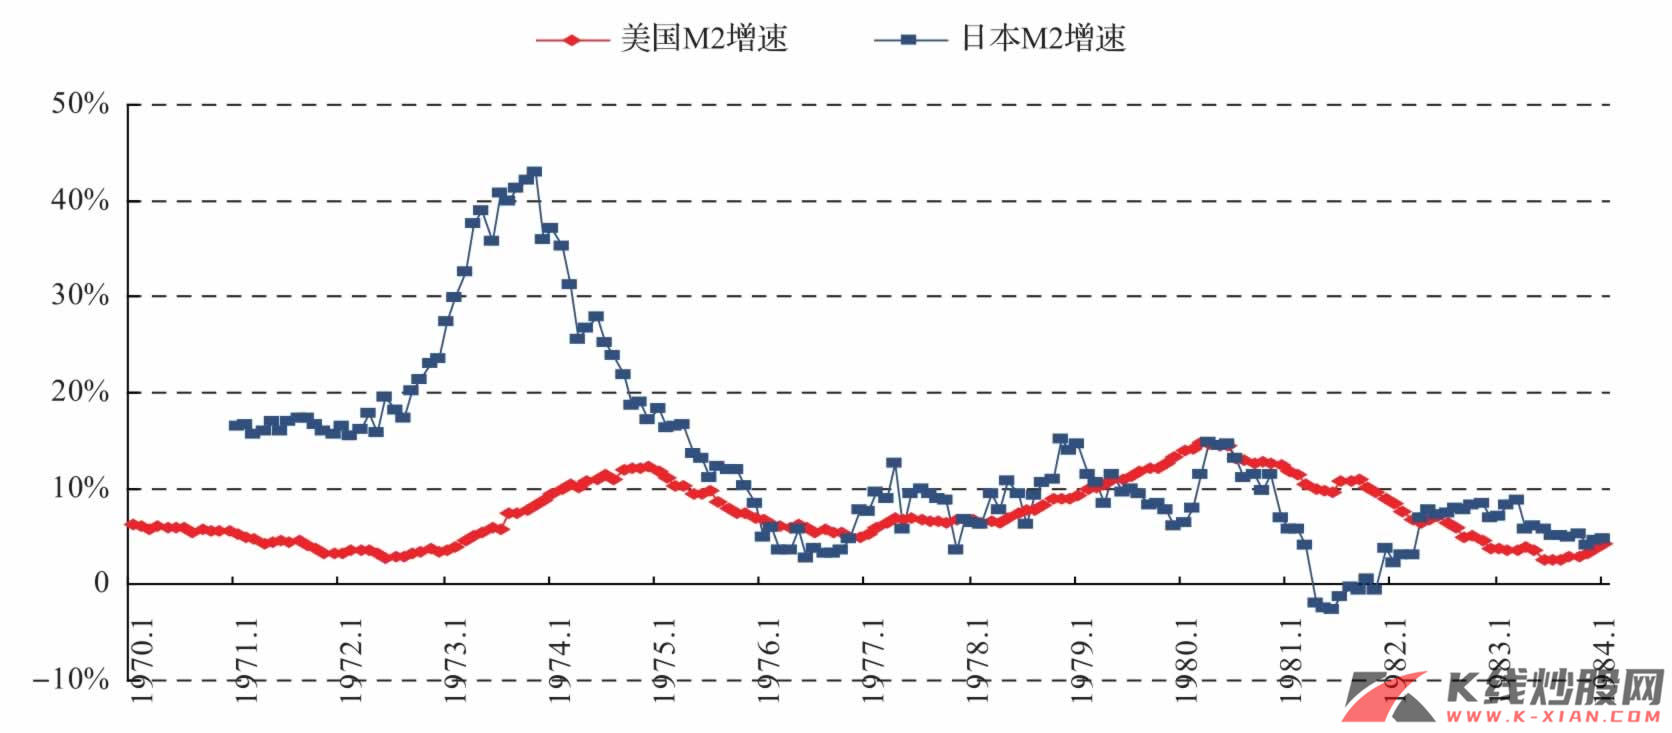 滞胀期间美国和日本的货币增速